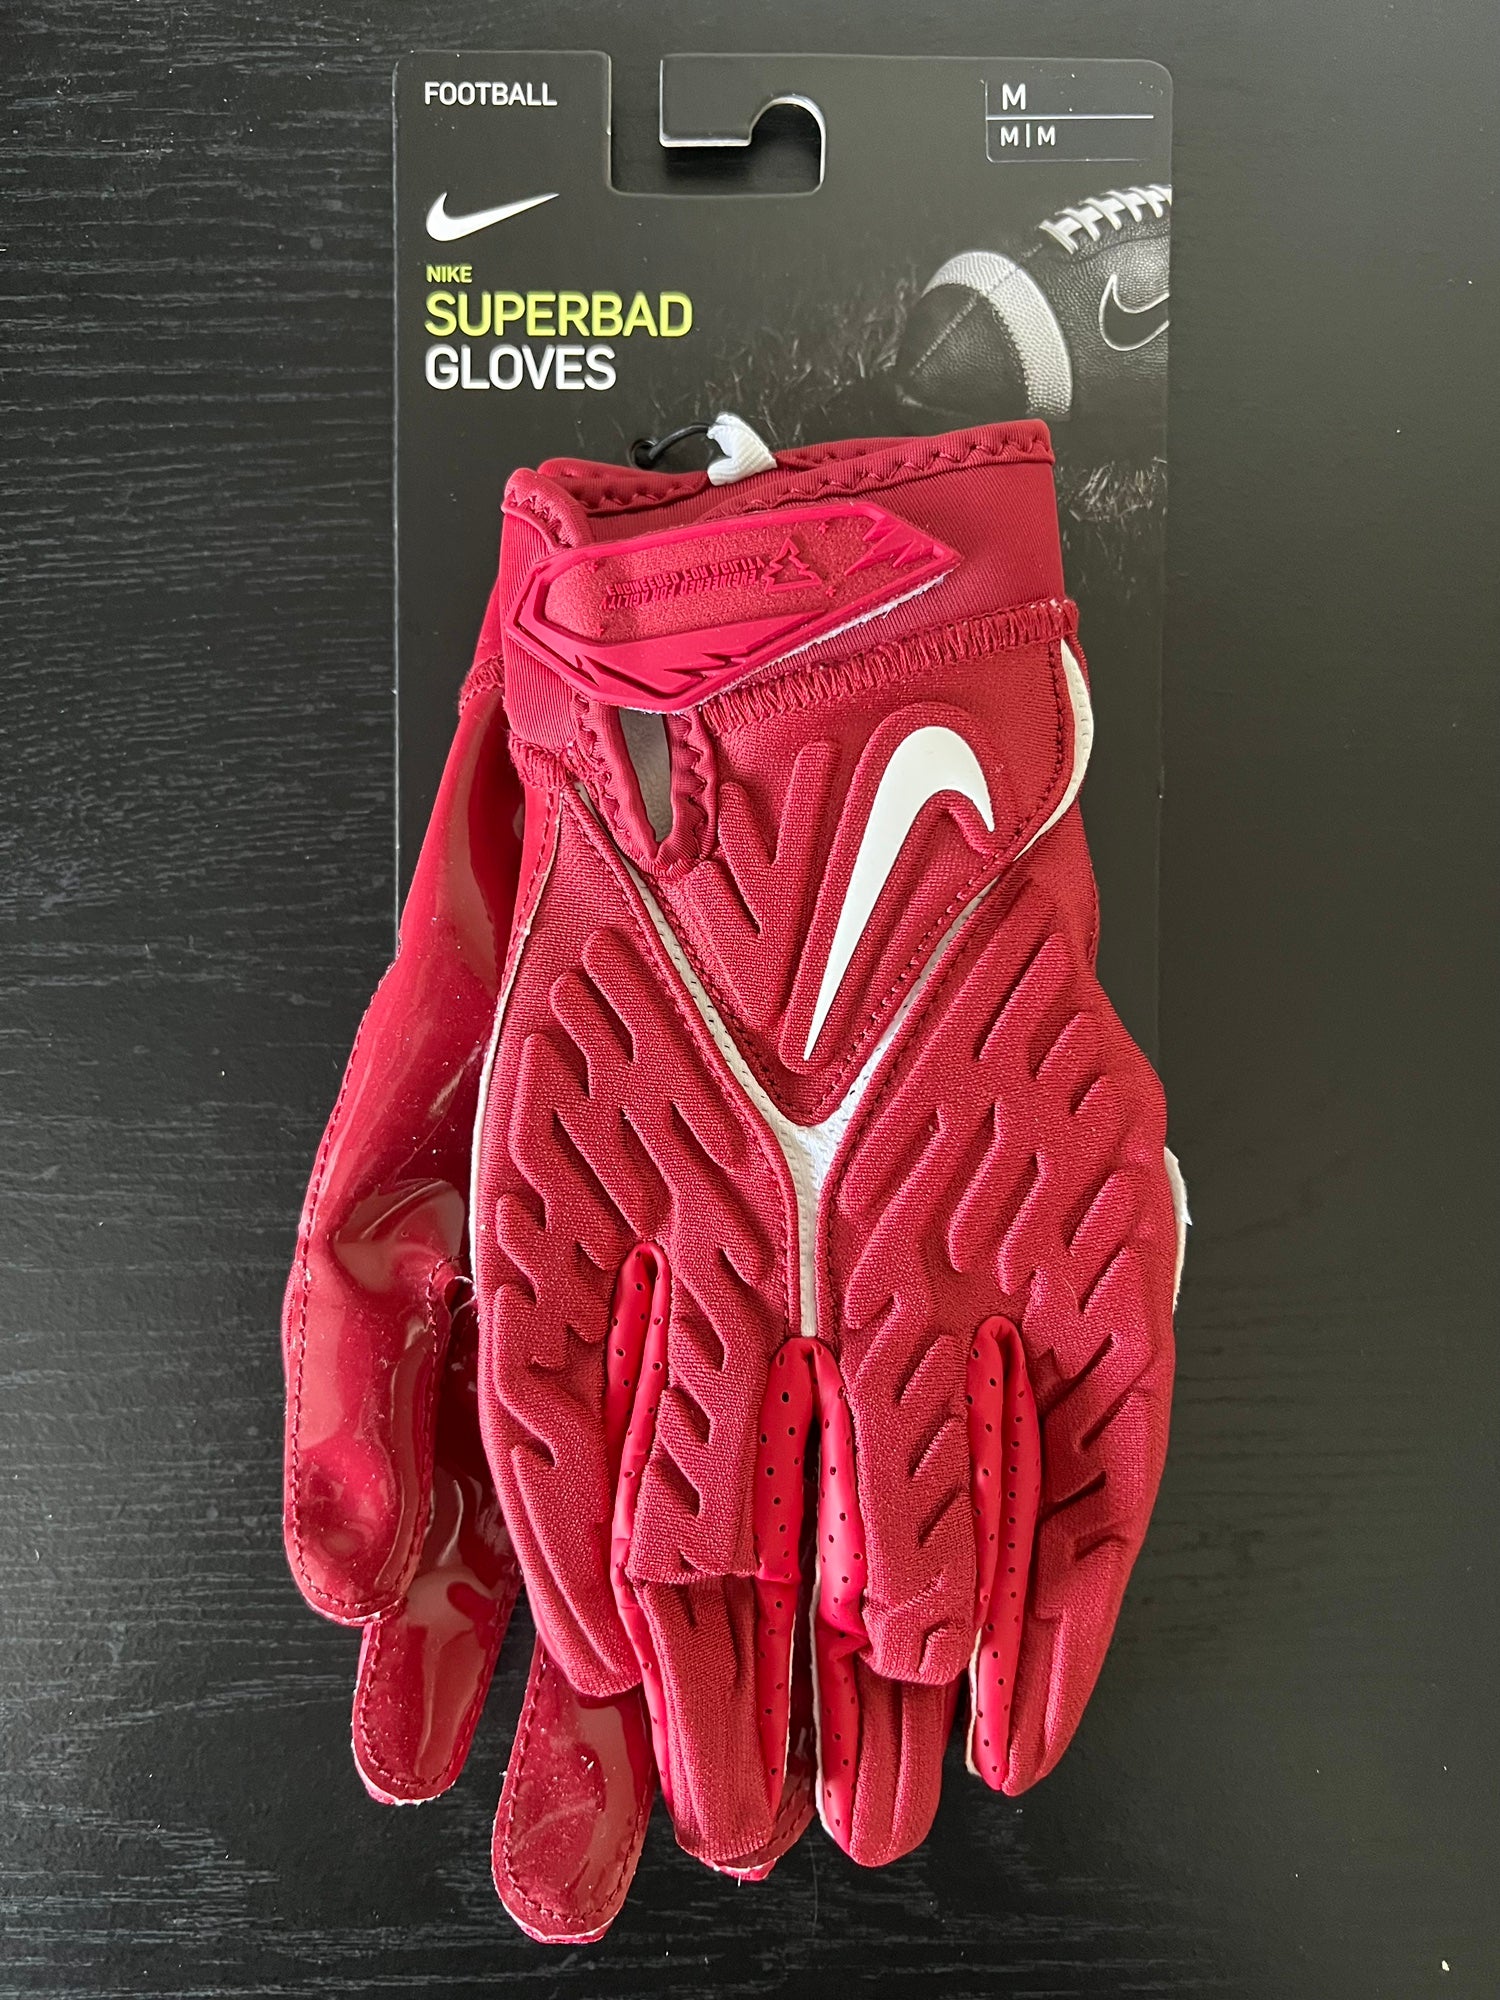 Nike Superbad 6.0 Football Gloves Medium Maroon Dark Red DX4497